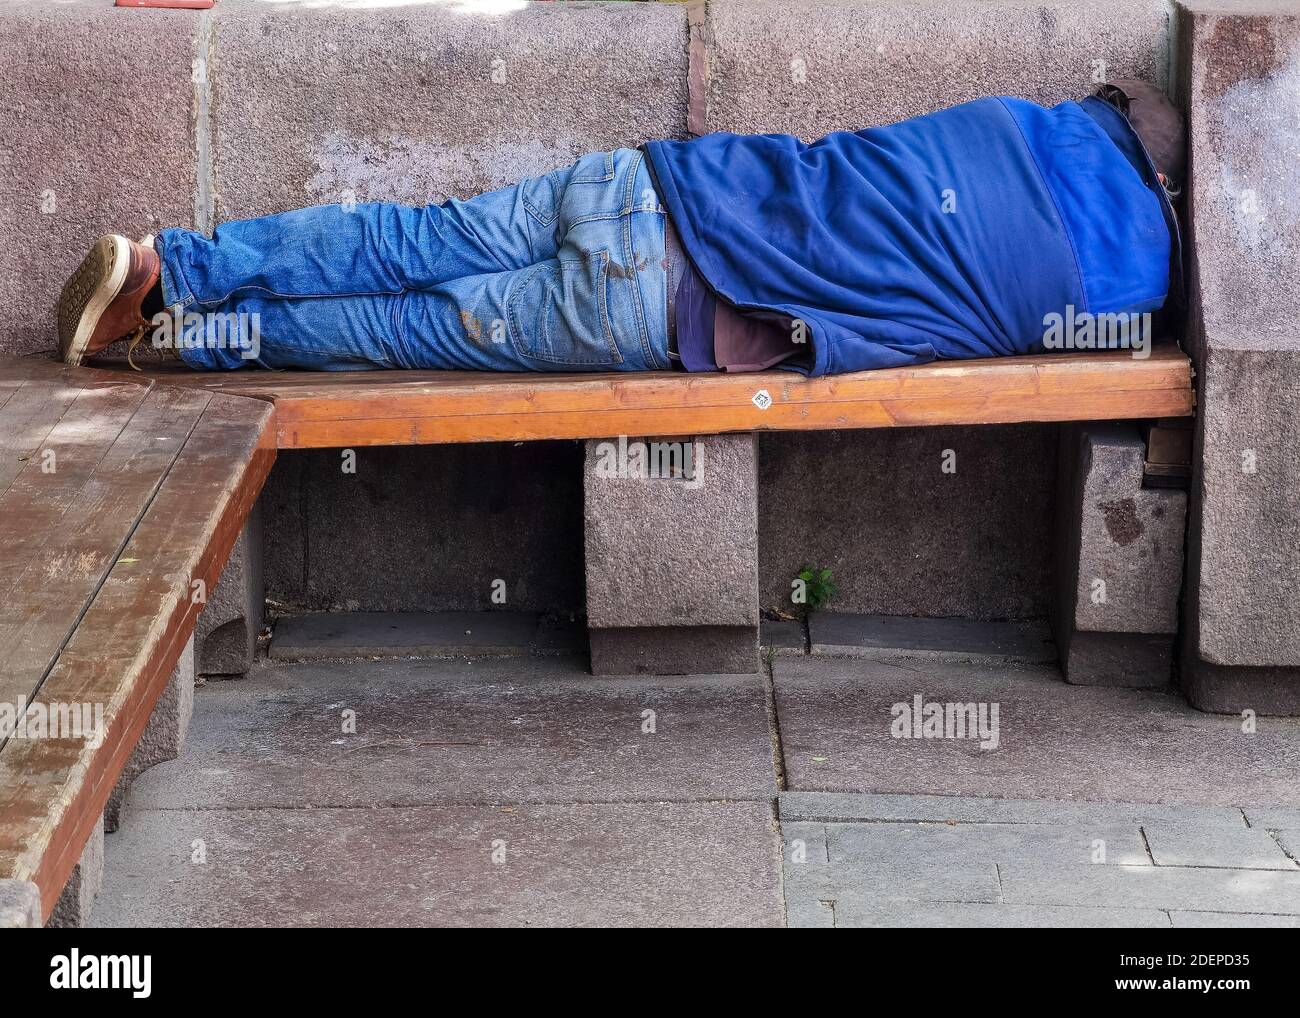 Obdachloser, der tagsüber auf einer hölzernen Parkbank schlecht schläft. Ein Symbol für die wachsenden Probleme der Obdachlosigkeit und Armut vor allem in der citi Stockfoto